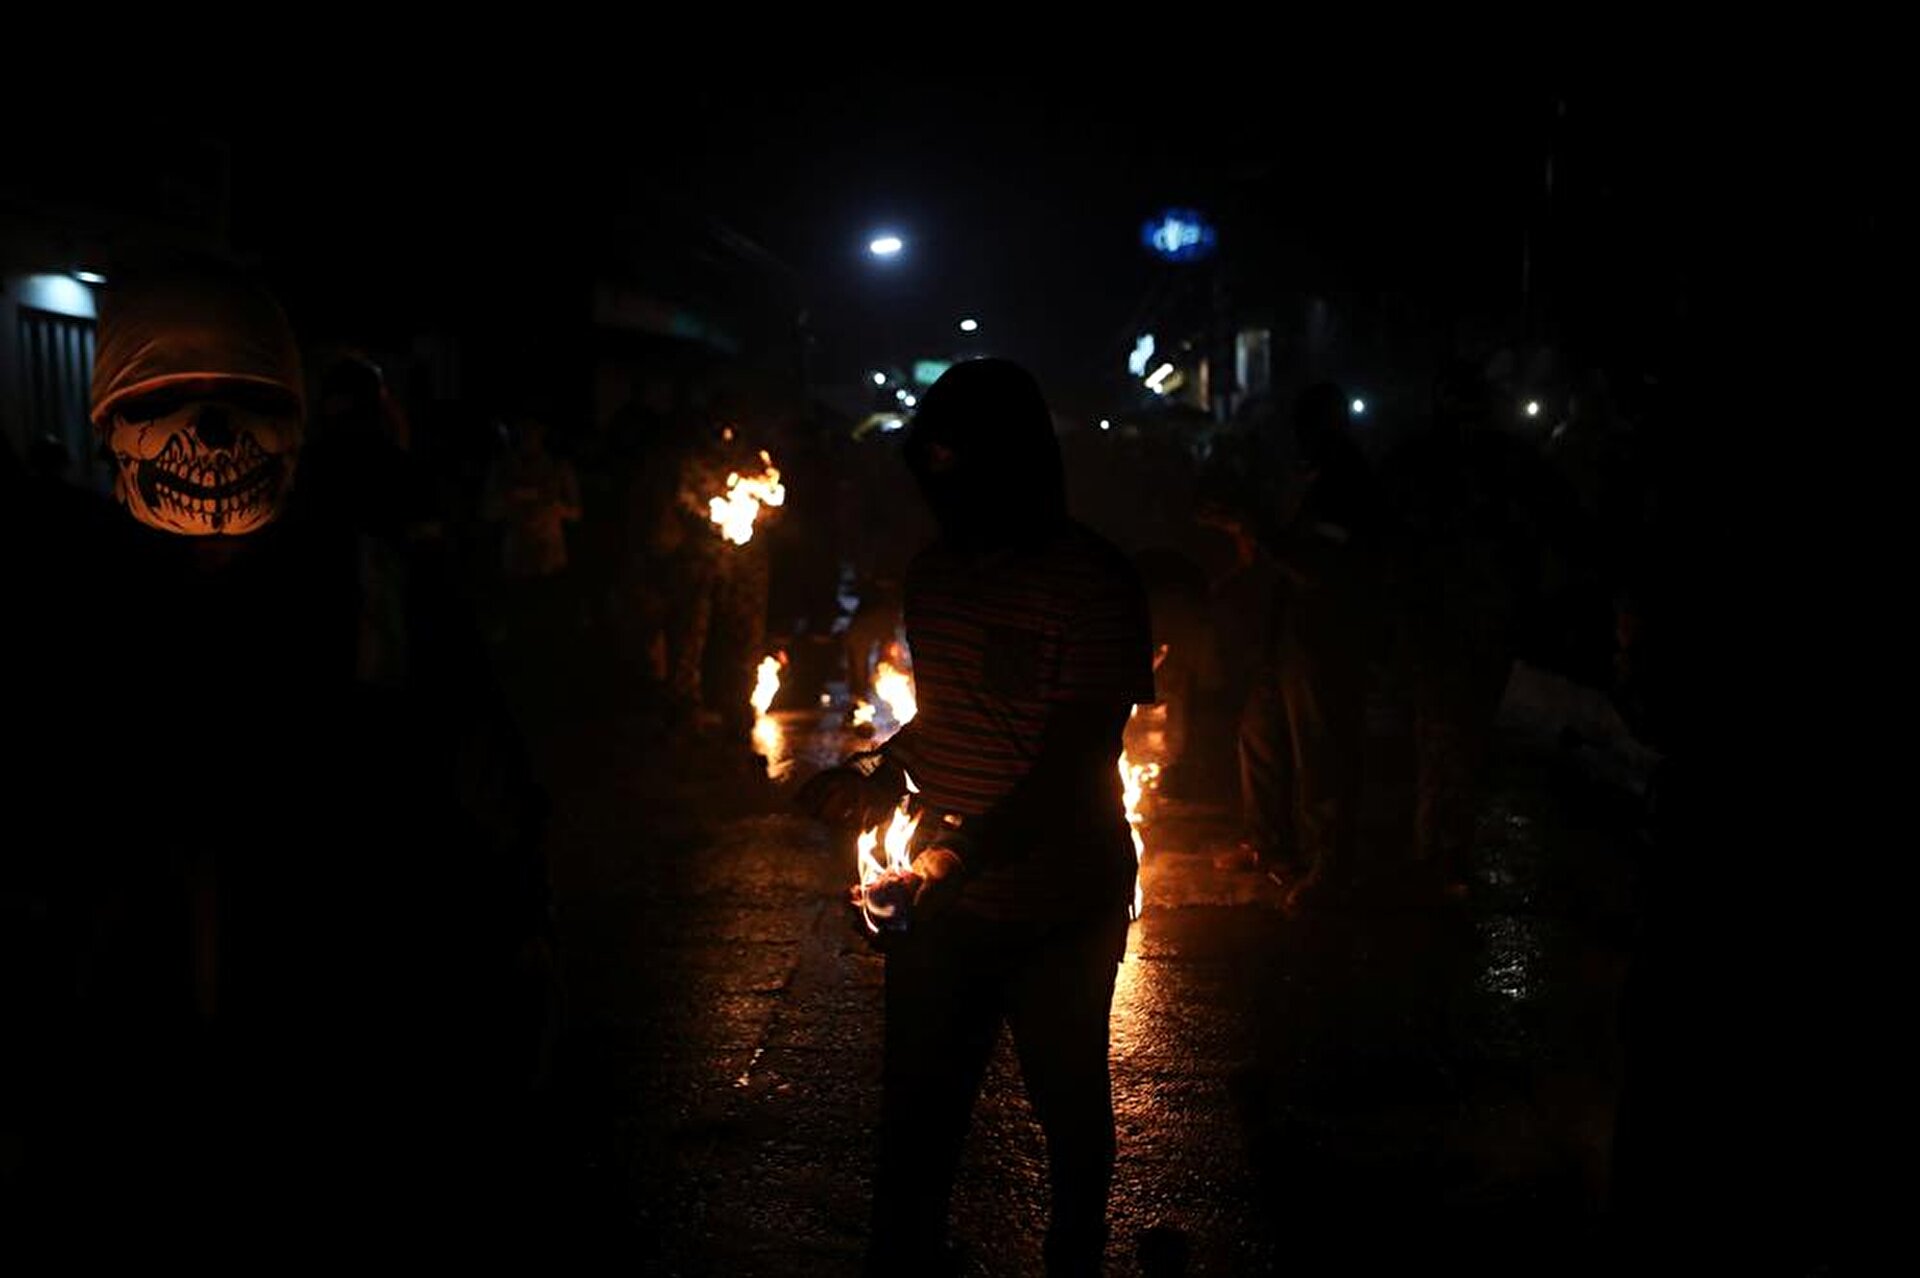 Balls of Fire festival in El Salvador